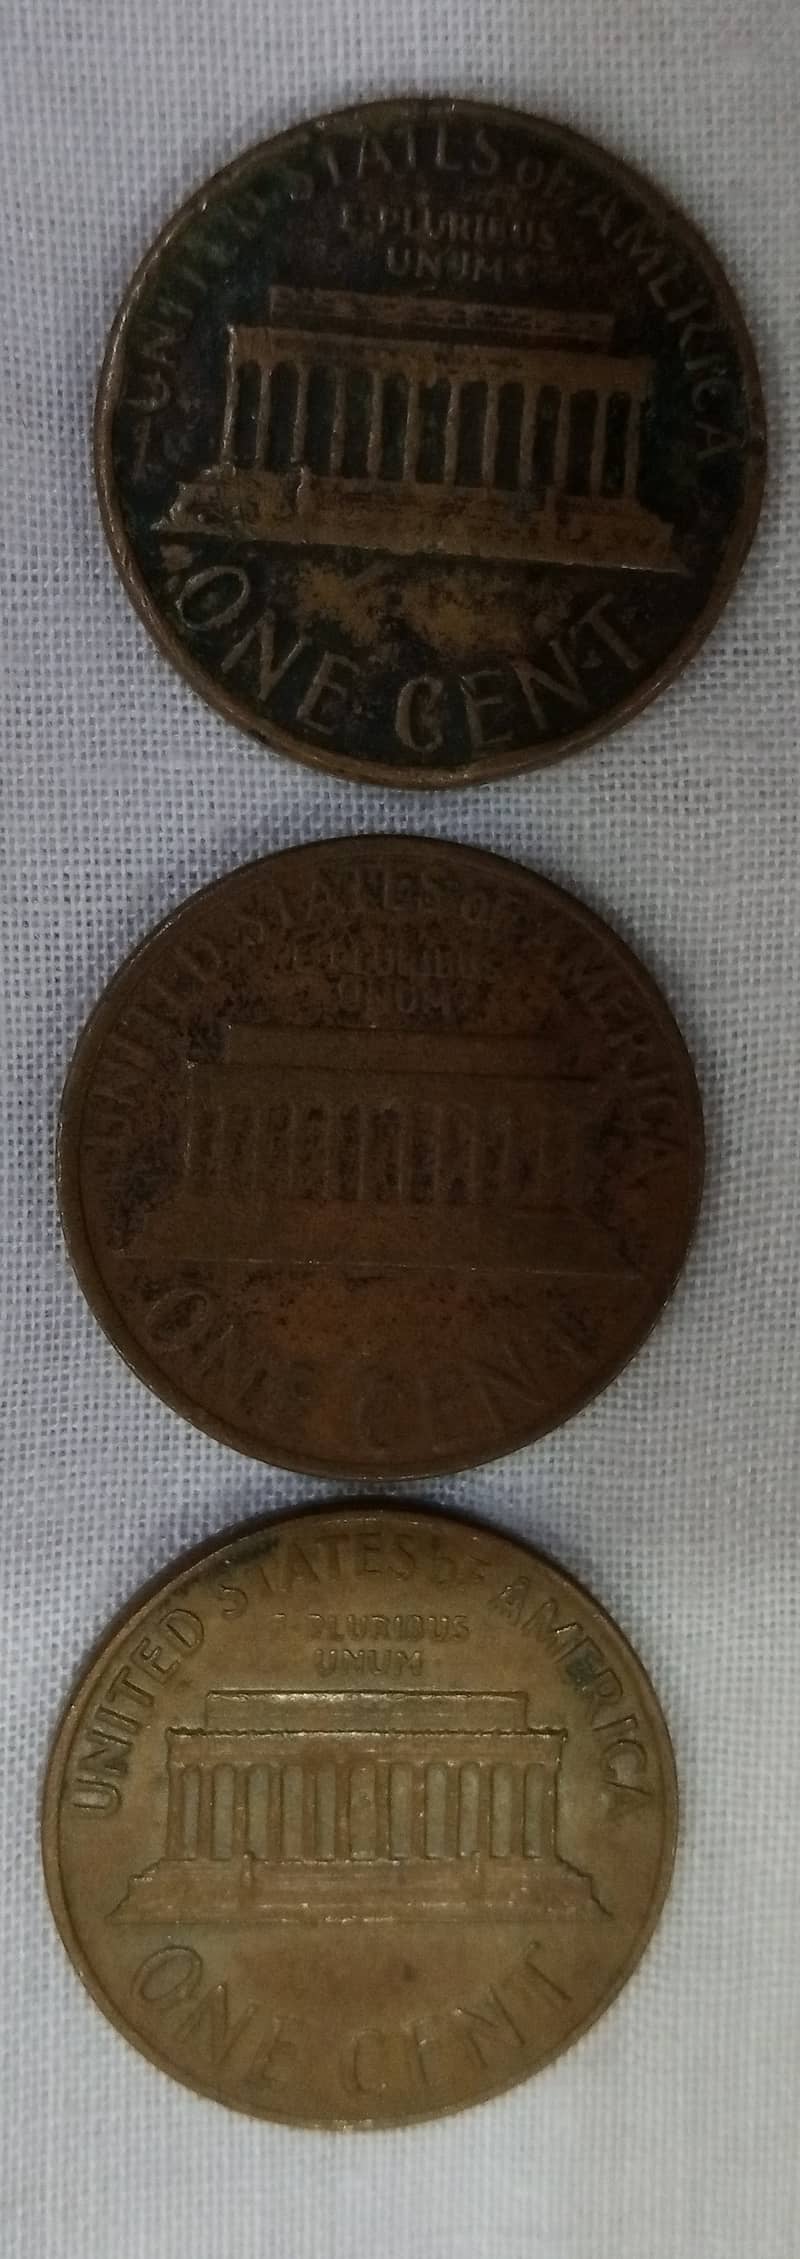 Antique Coin's 1